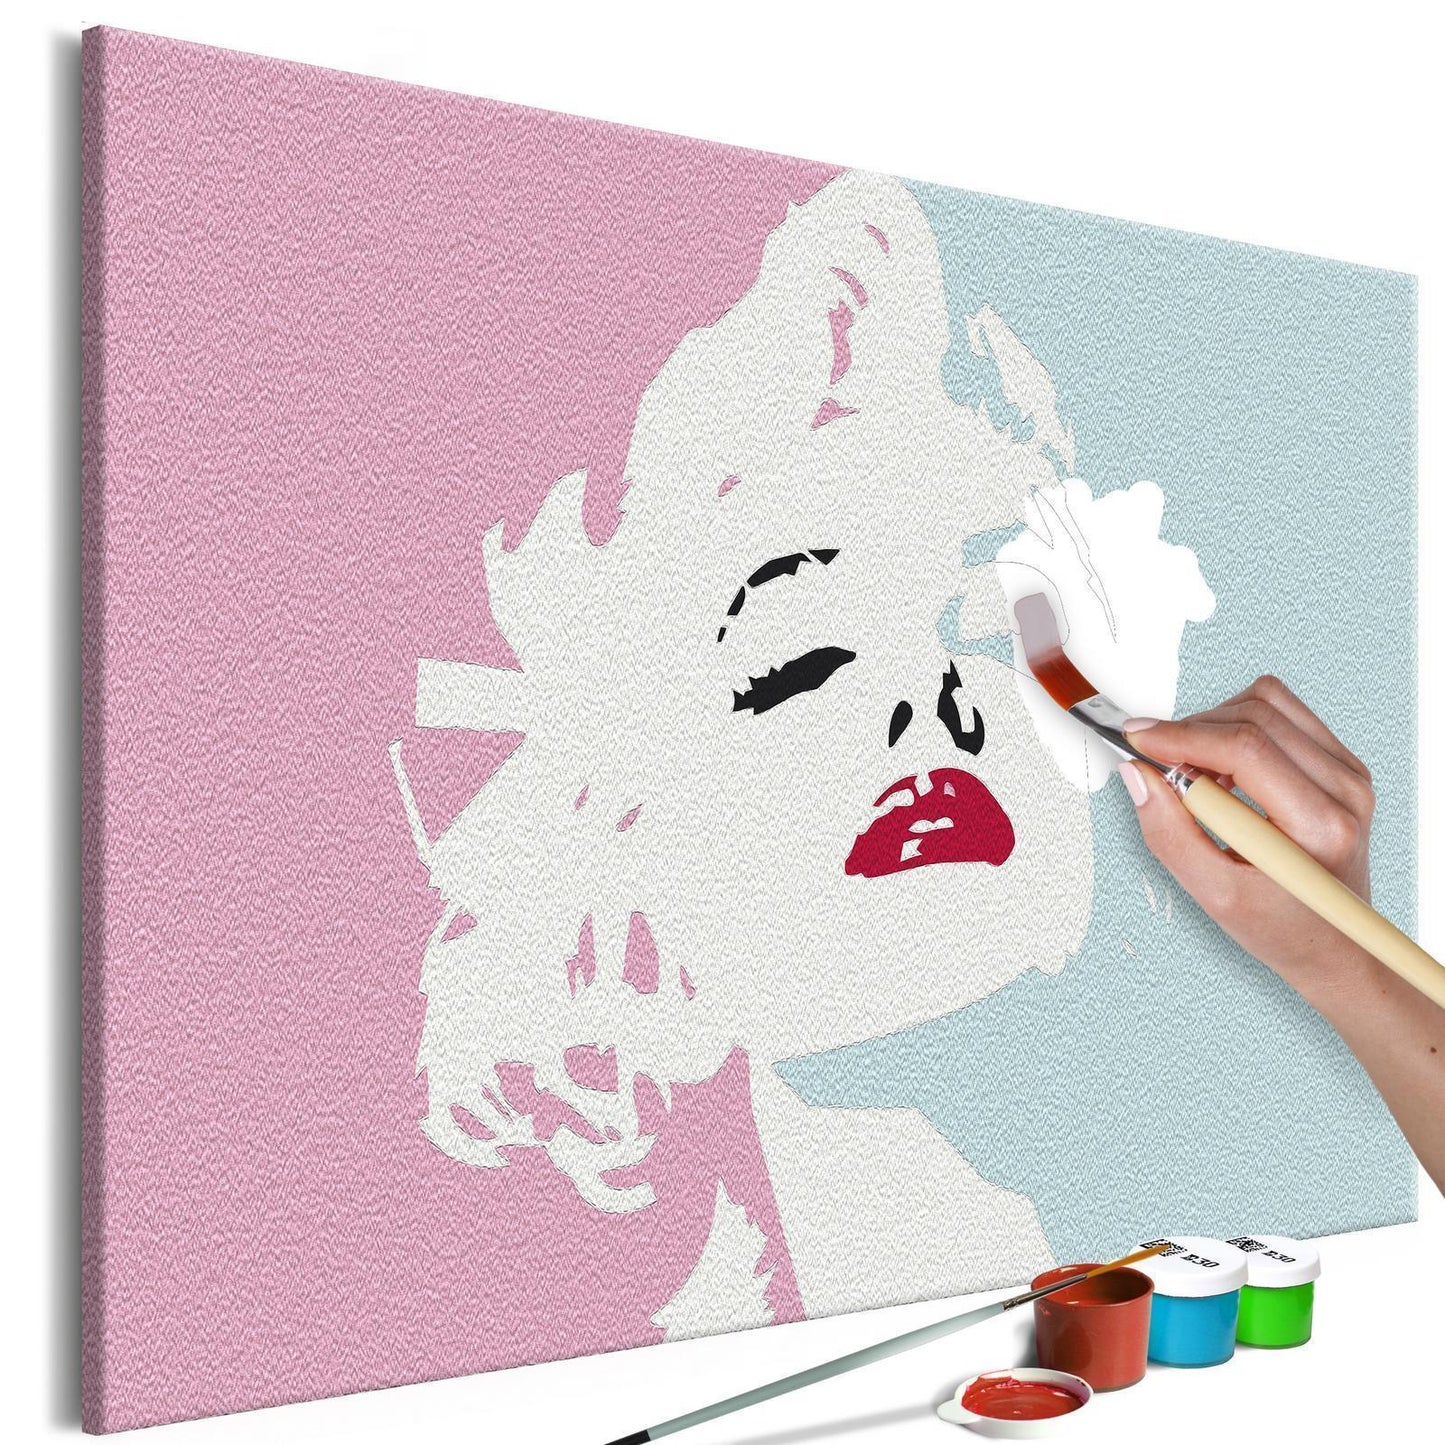 DIY-Leinwandgemälde – Marilyn in Rosa 